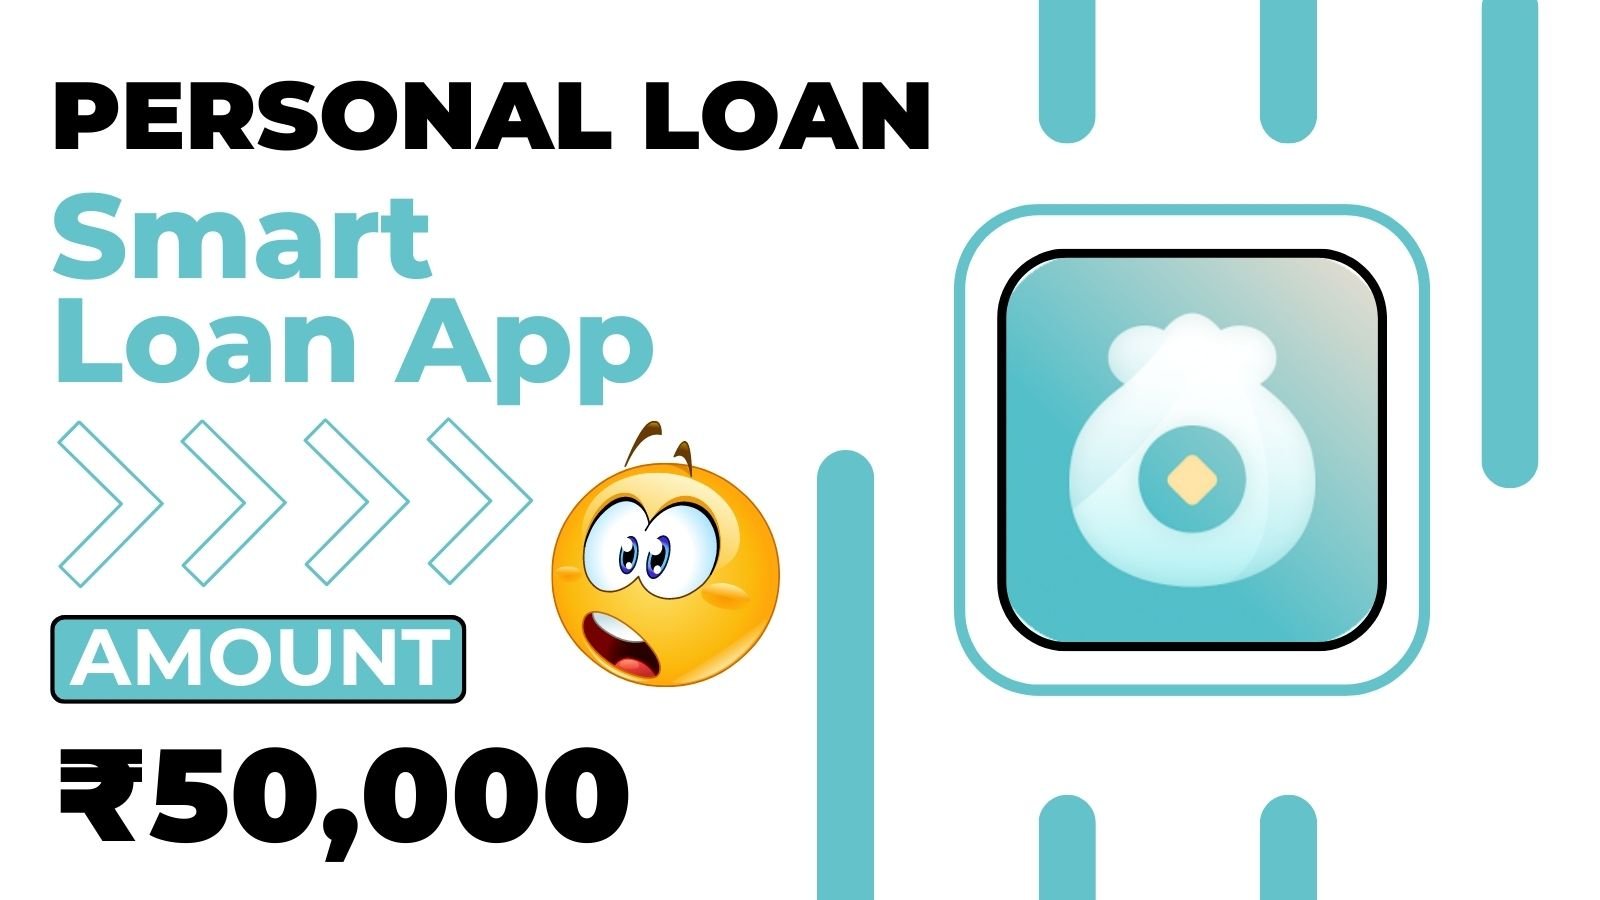 Smart Loan App Loan Amount